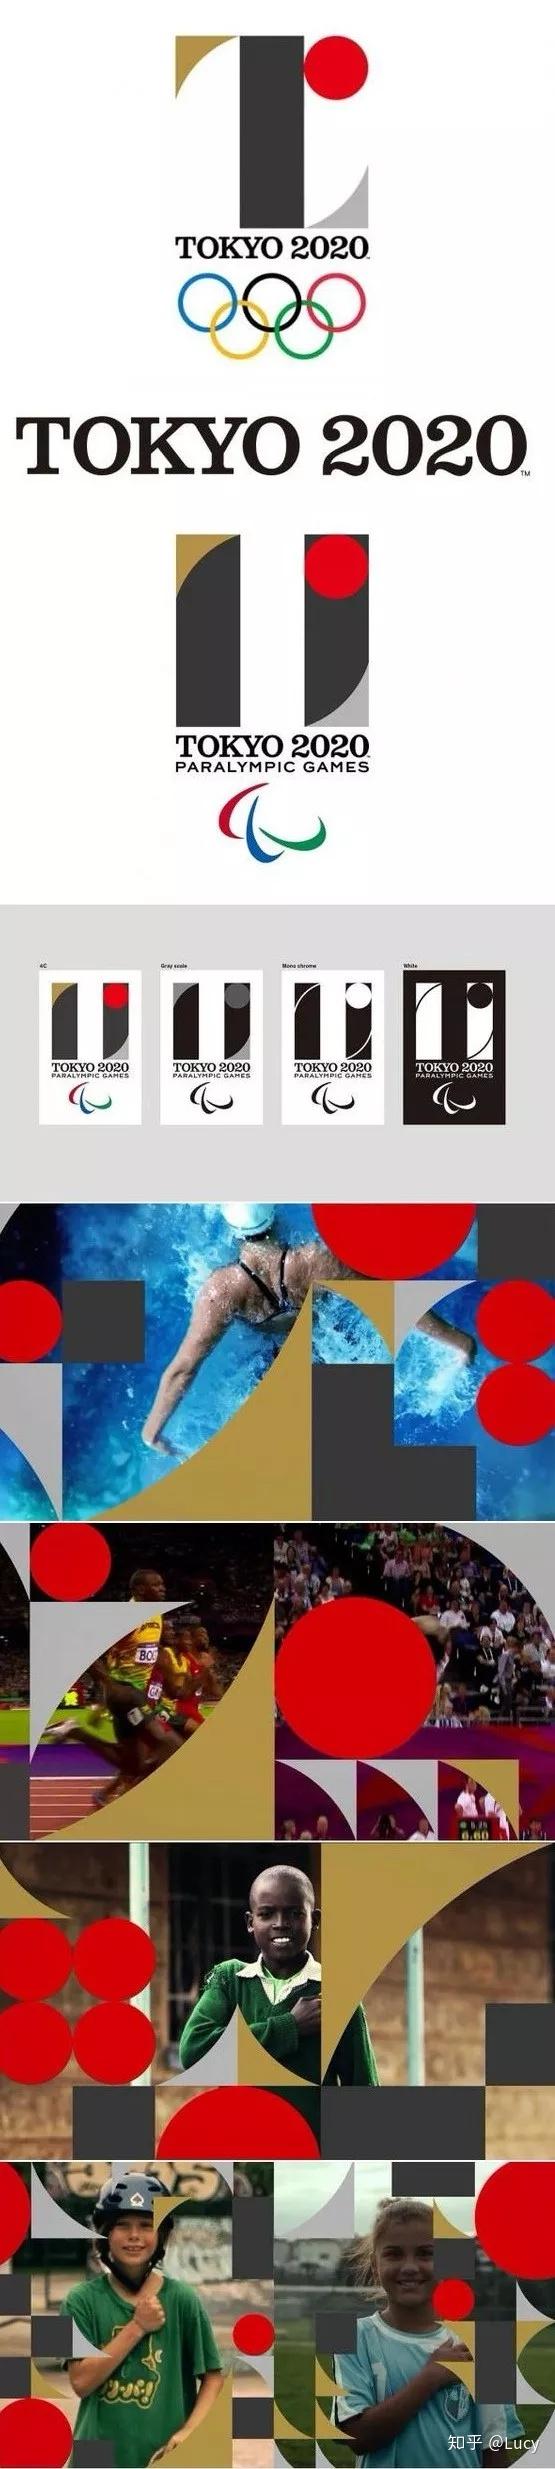 2020 东京奥运会会徽平面设计竞技案